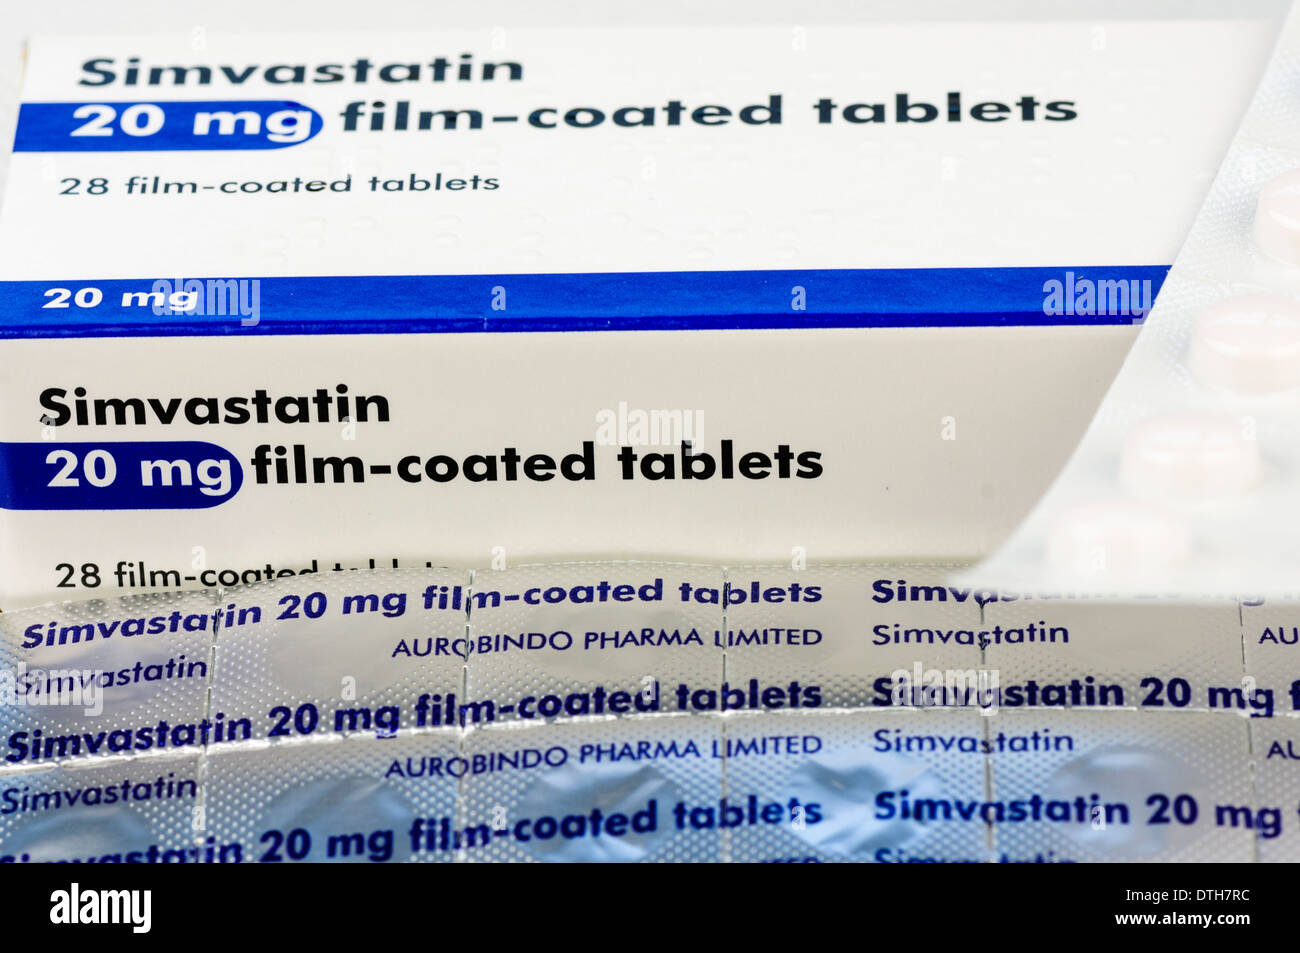 Simvastatin 20mg Tabletten, einem häufig verschriebene statin zur Senkung der Cholesterinspiegel im Blut. Stockfoto